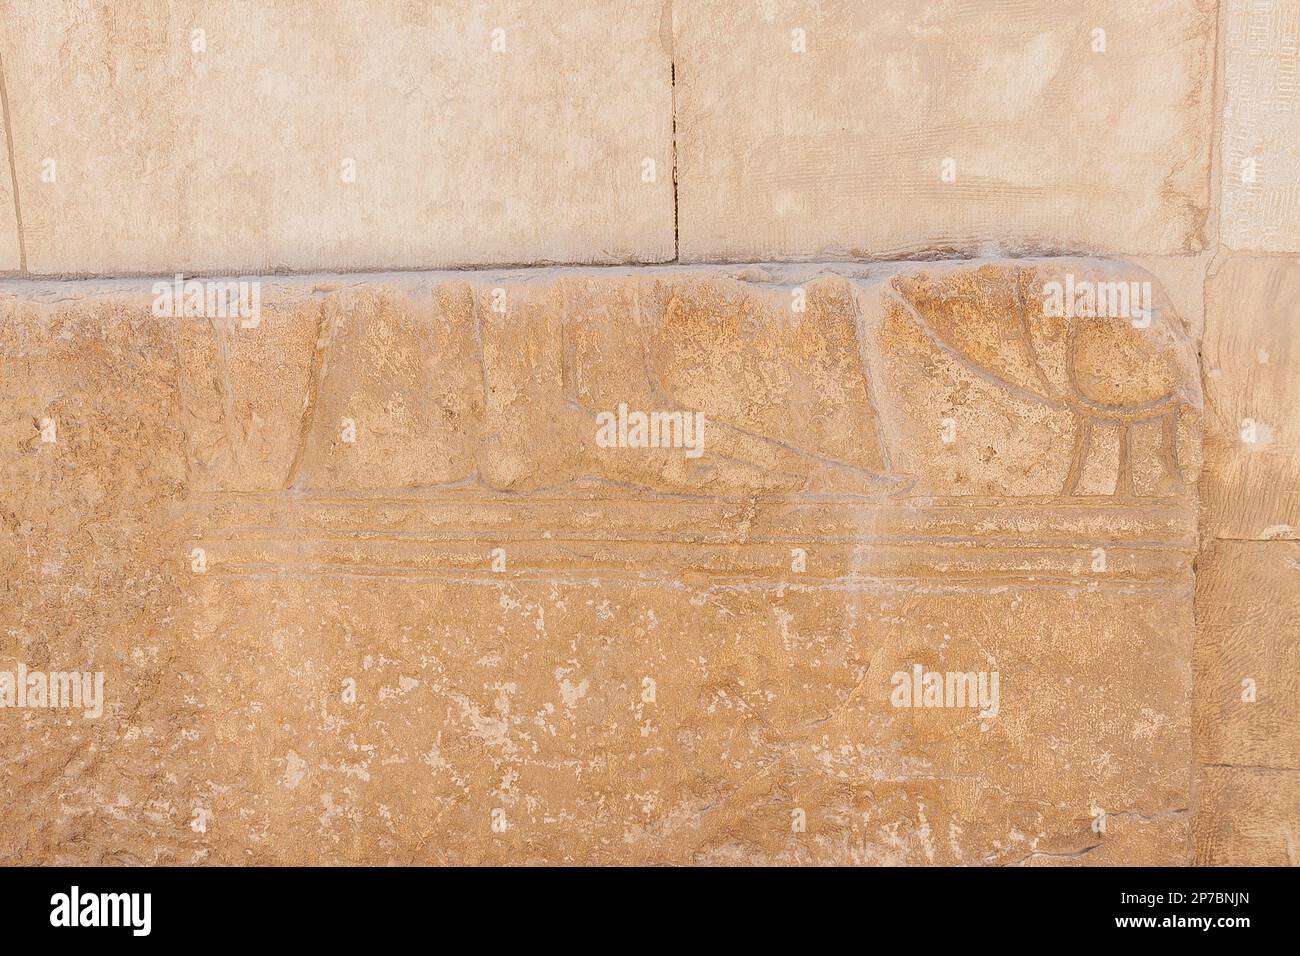 Egitto, Saqqara, tomba del nuovo Regno di Horemheb, parete sud della seconda corte: Rimangono solo i piedi. Probabilmente una regina. Foto Stock